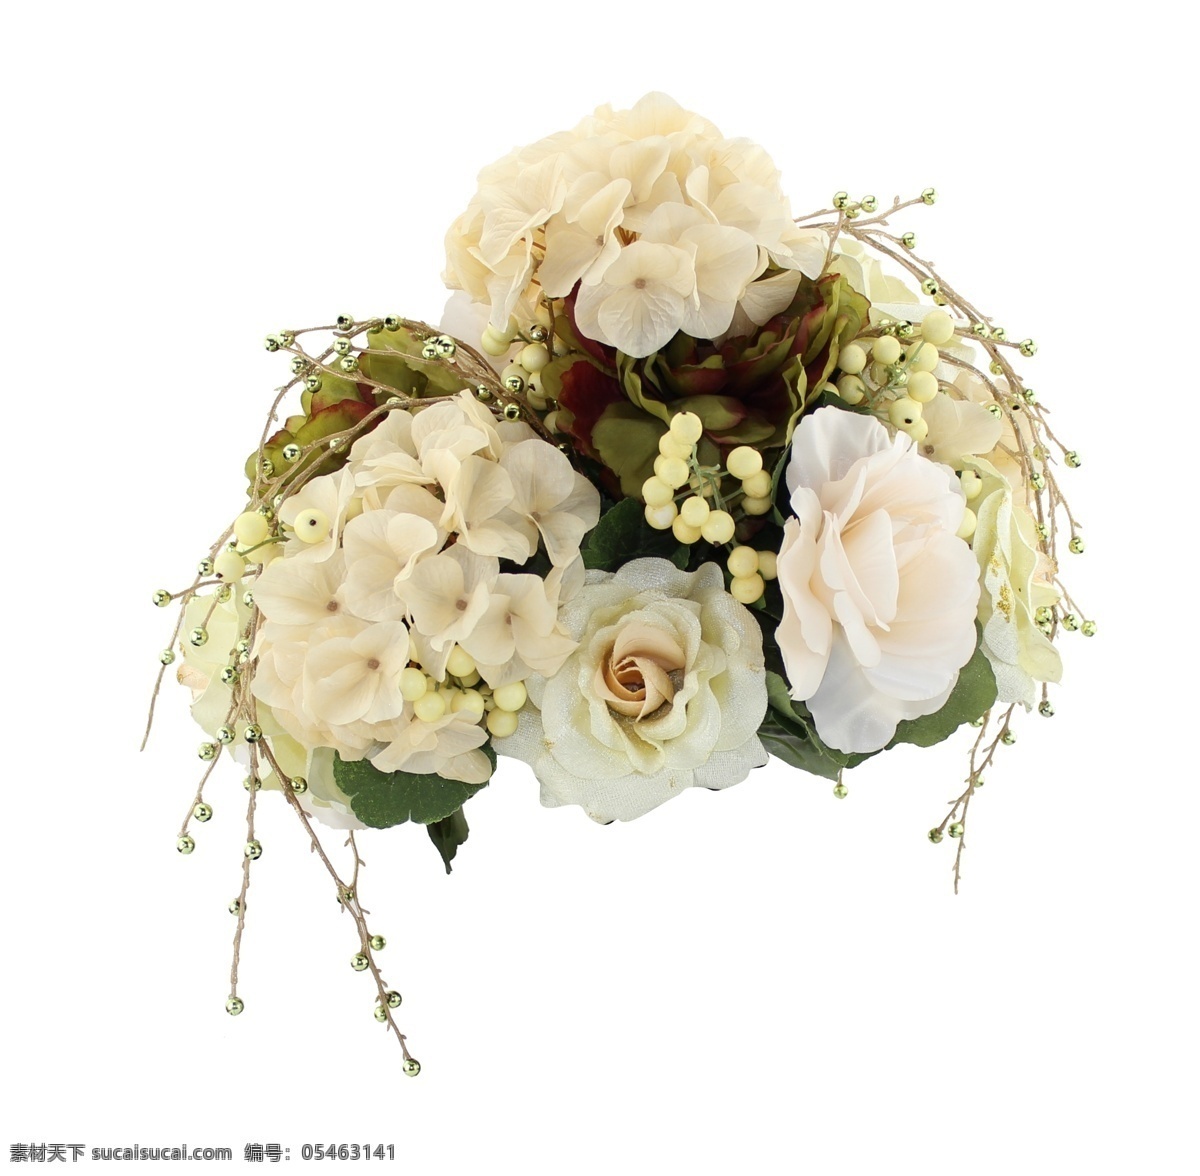 创意花朵 一束花 珍珠 花朵 白色 米白 黄色 高清 简约 温馨 束带 其他模版 广告设计模板 源文件